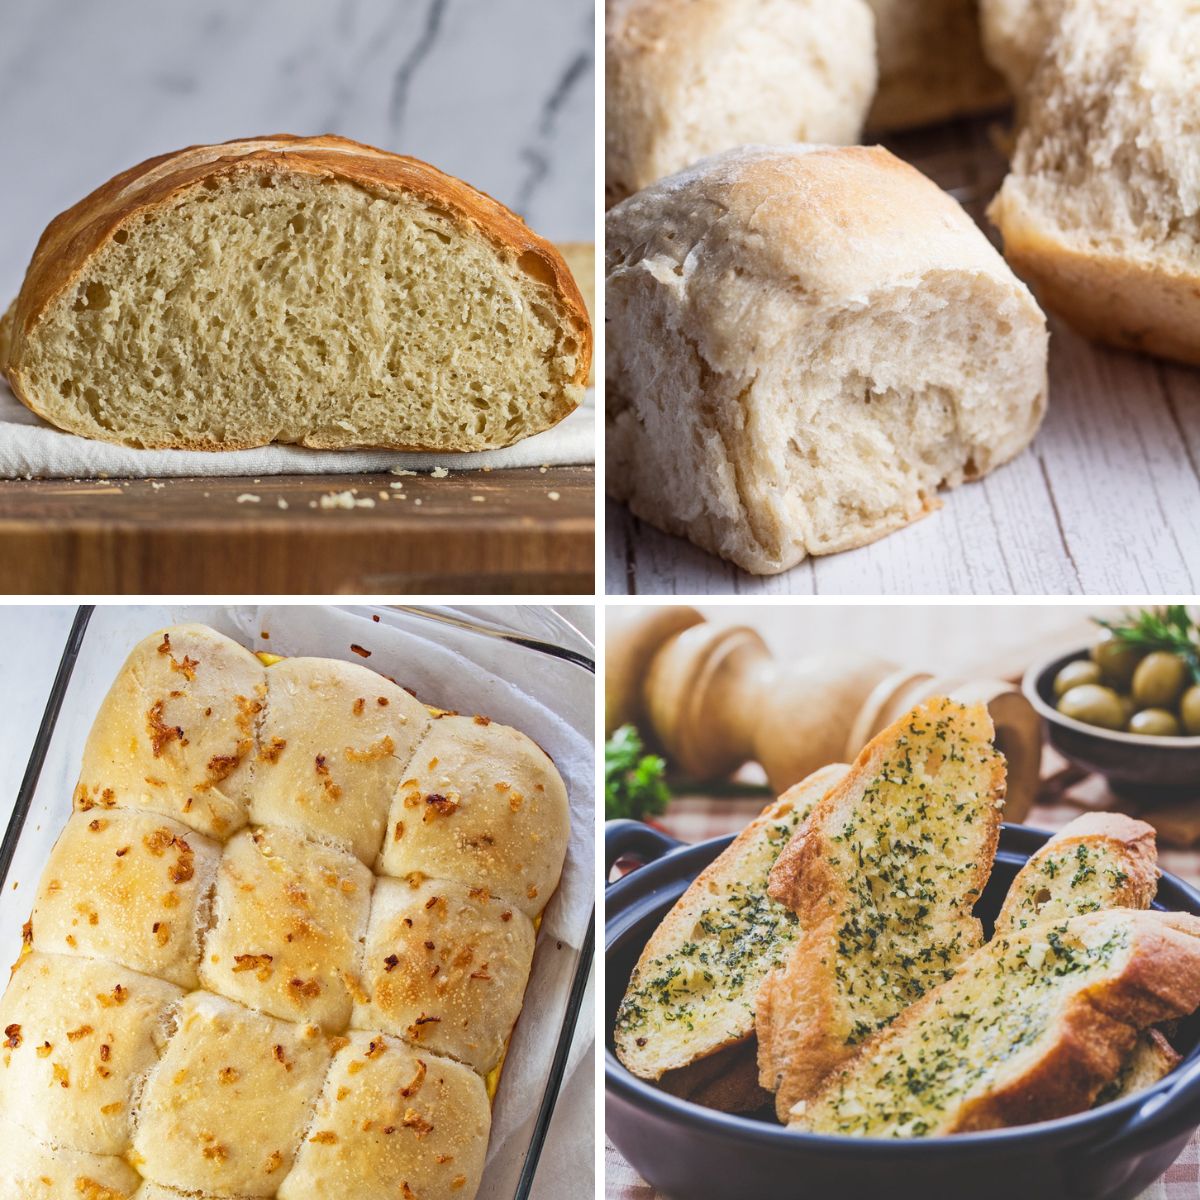 I migliori panini per la cena del Ringraziamento e ricette di pane da cuocere e condividere con i pasti delle vacanze.